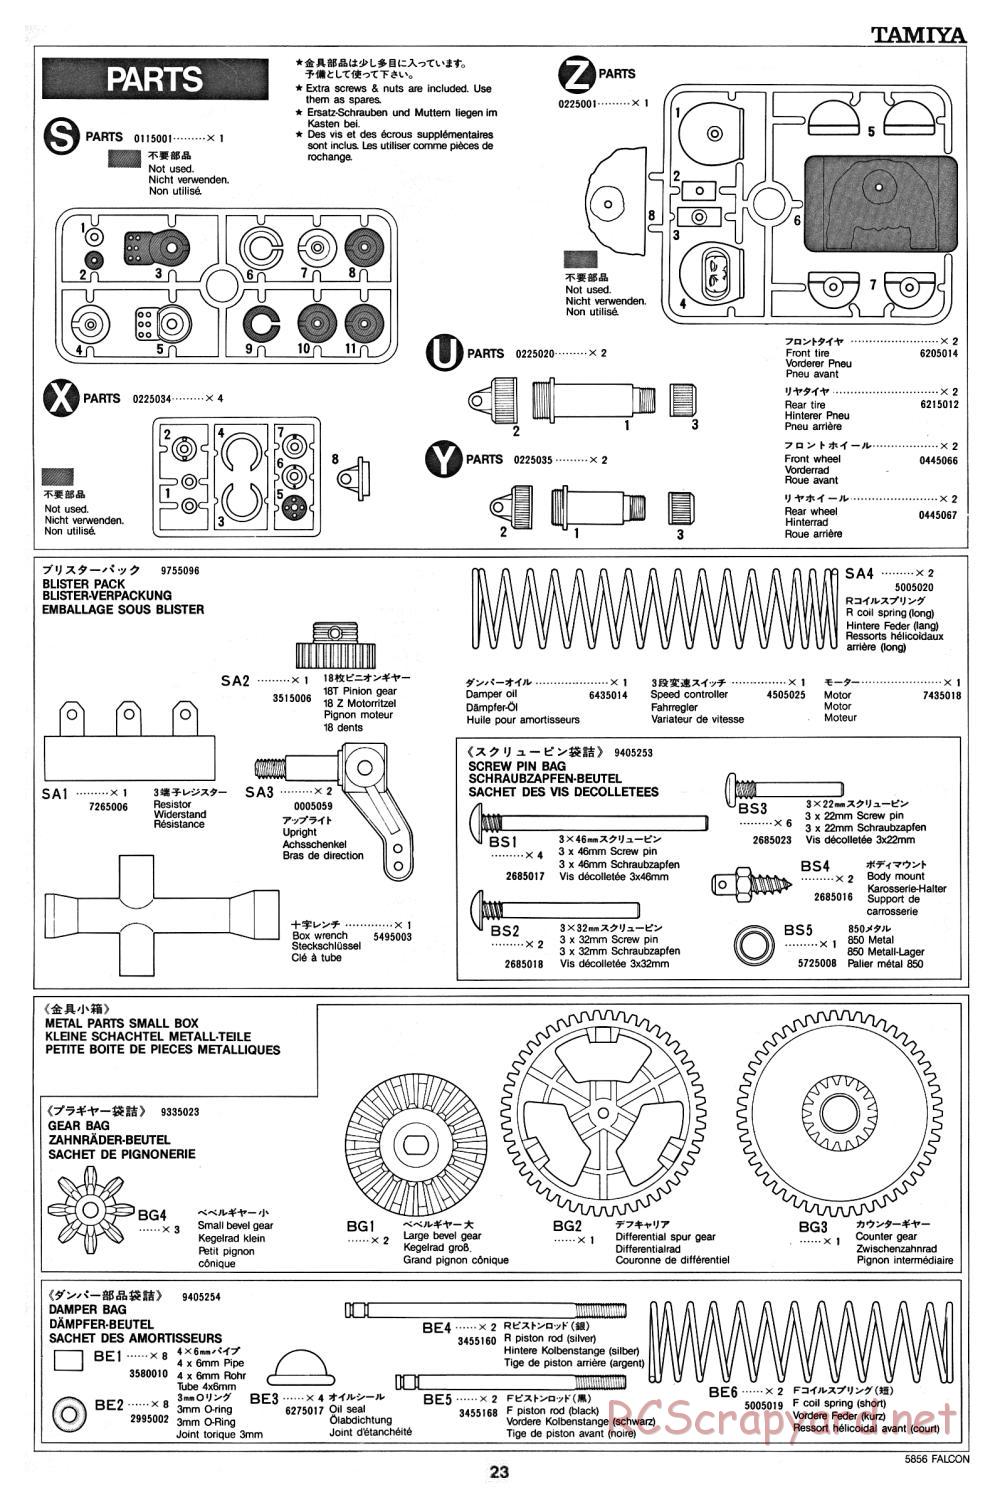 Tamiya - The Falcon - 58056 - Manual - Page 23